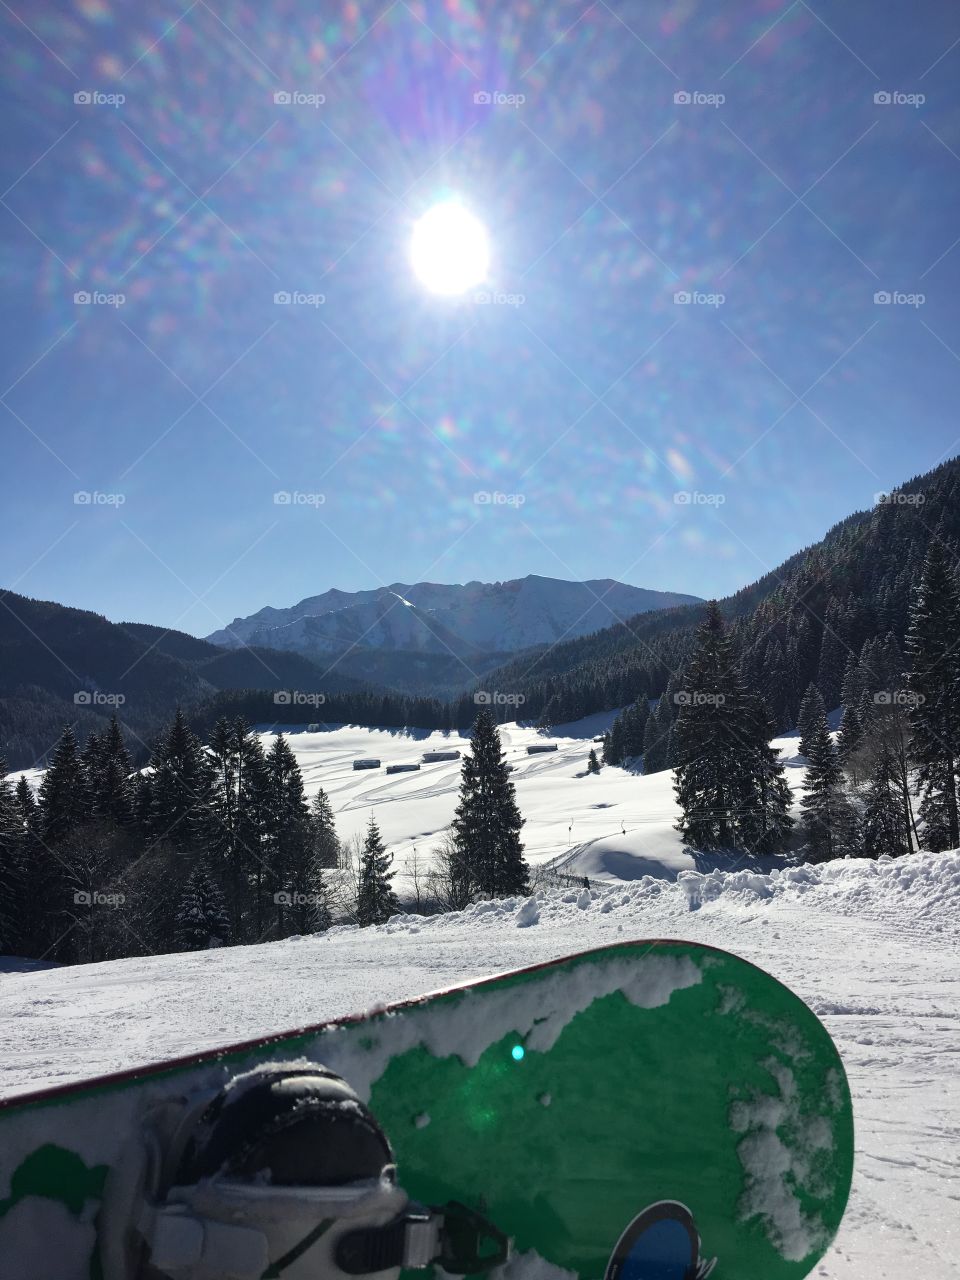 Sunny snowboard day 